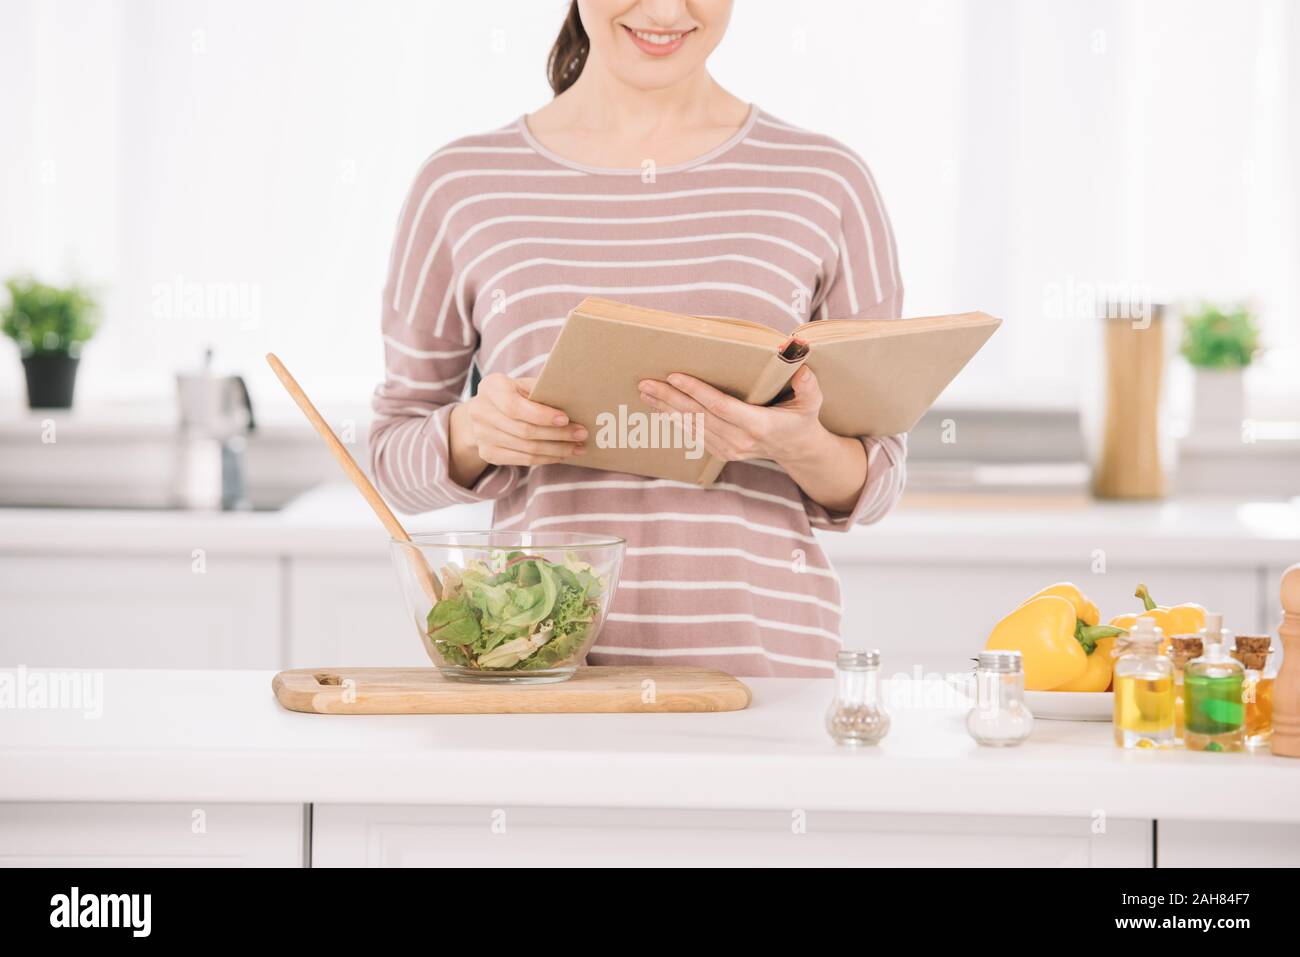 Vista recortada de mujer sonriente lectura libro recibo mientras estuve en la mesa de la cocina cerca del recipiente con ensalada de verduras Foto de stock